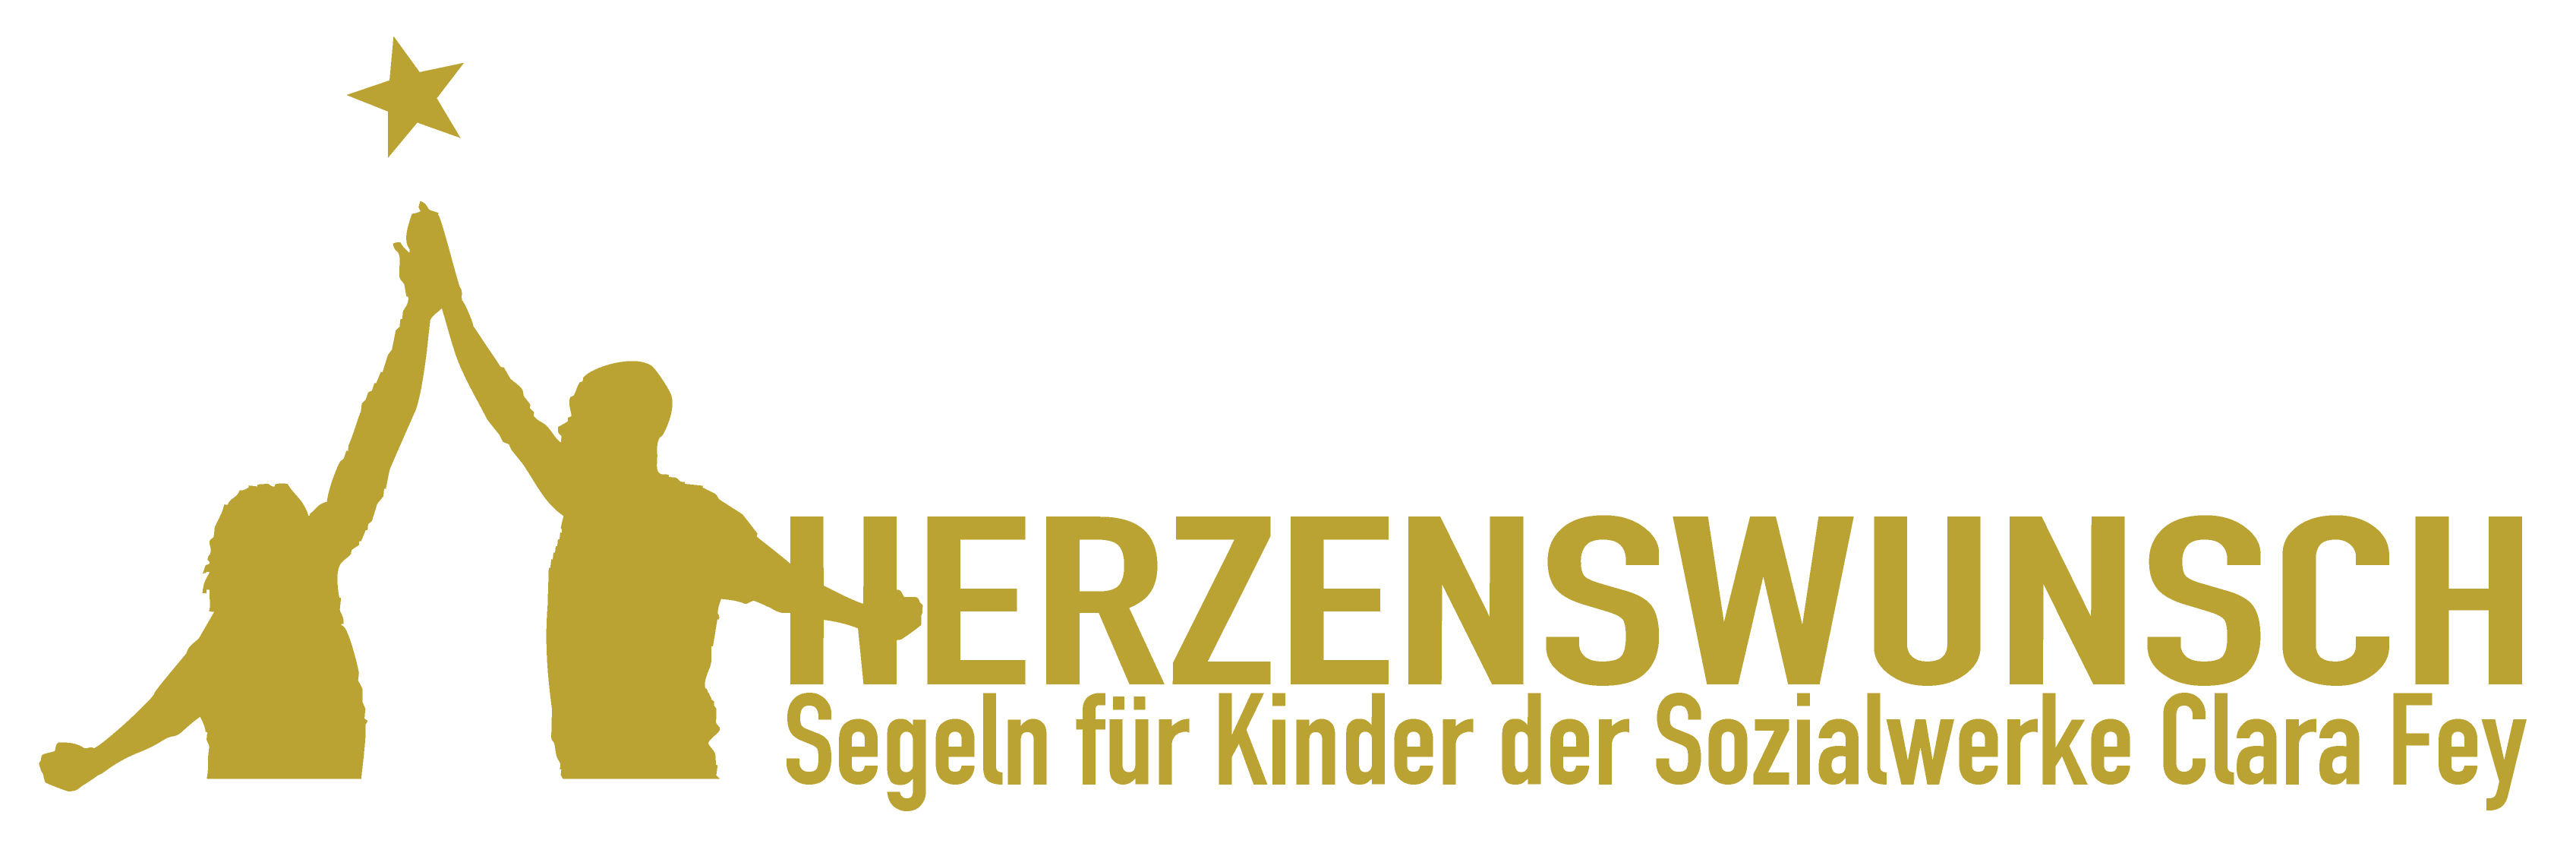 logo_Herzenswunsch.png